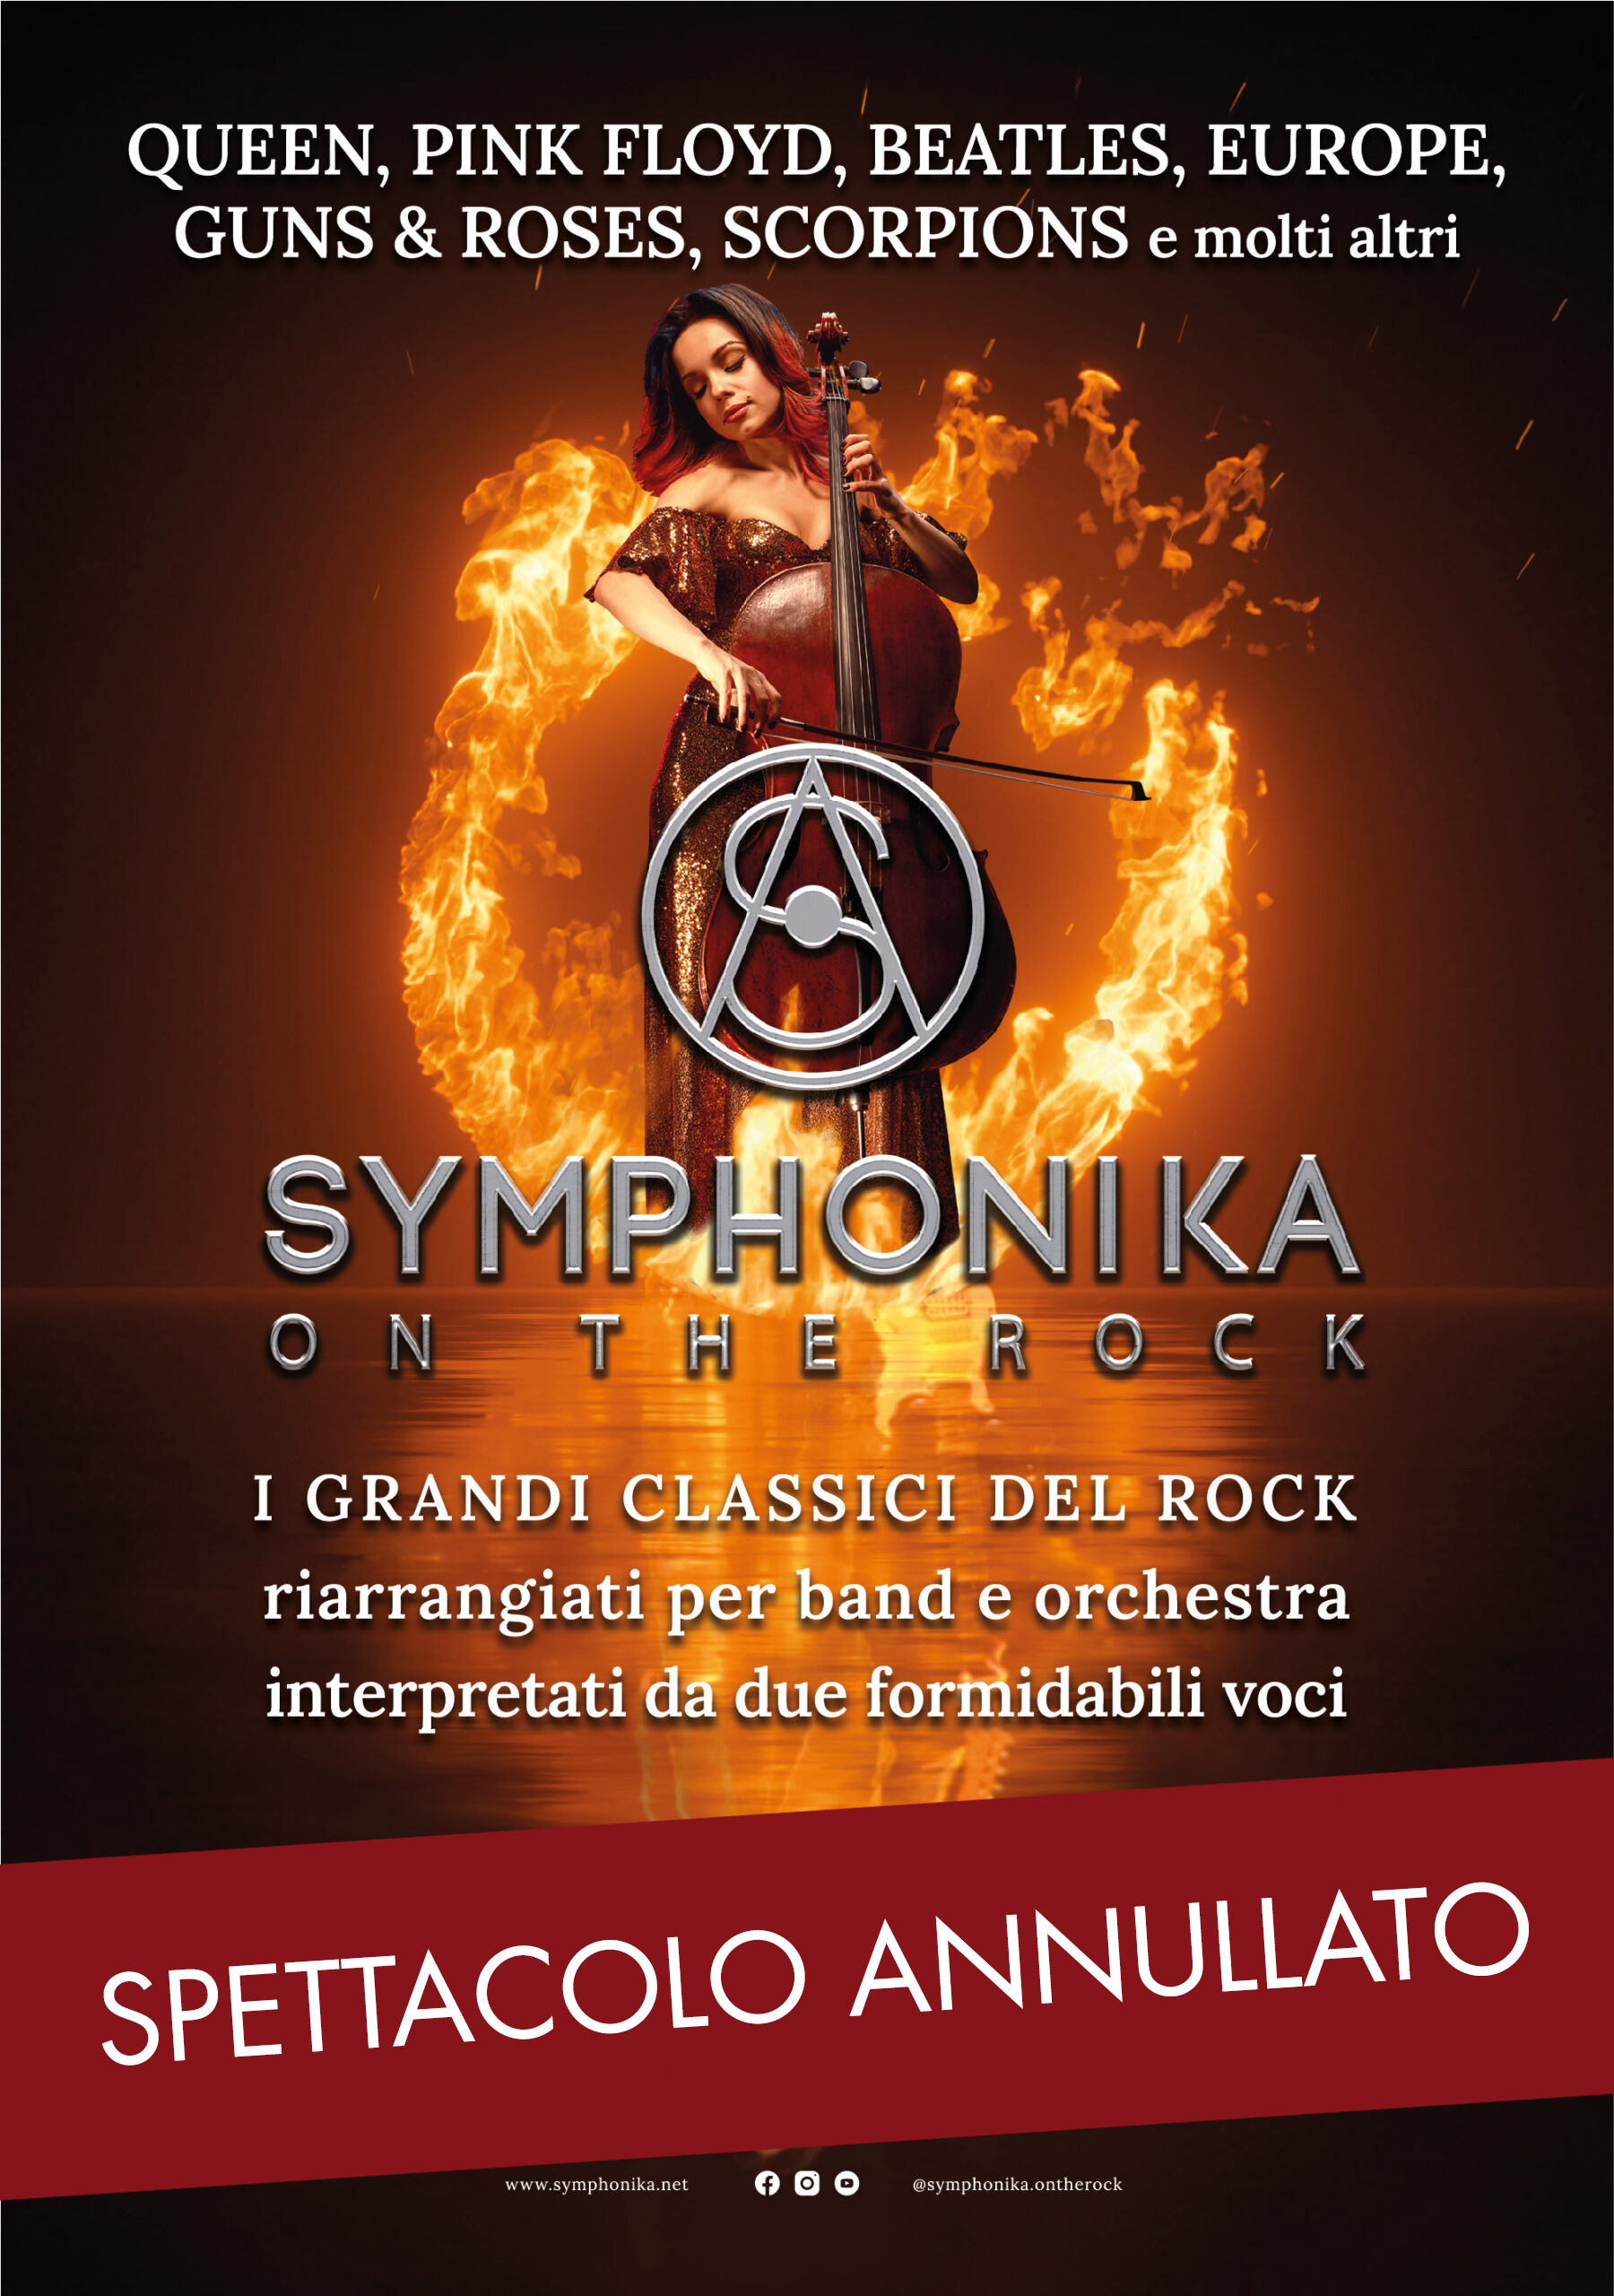 SYMPHONICA on the rock SPETTACOLO ANNULLATO!